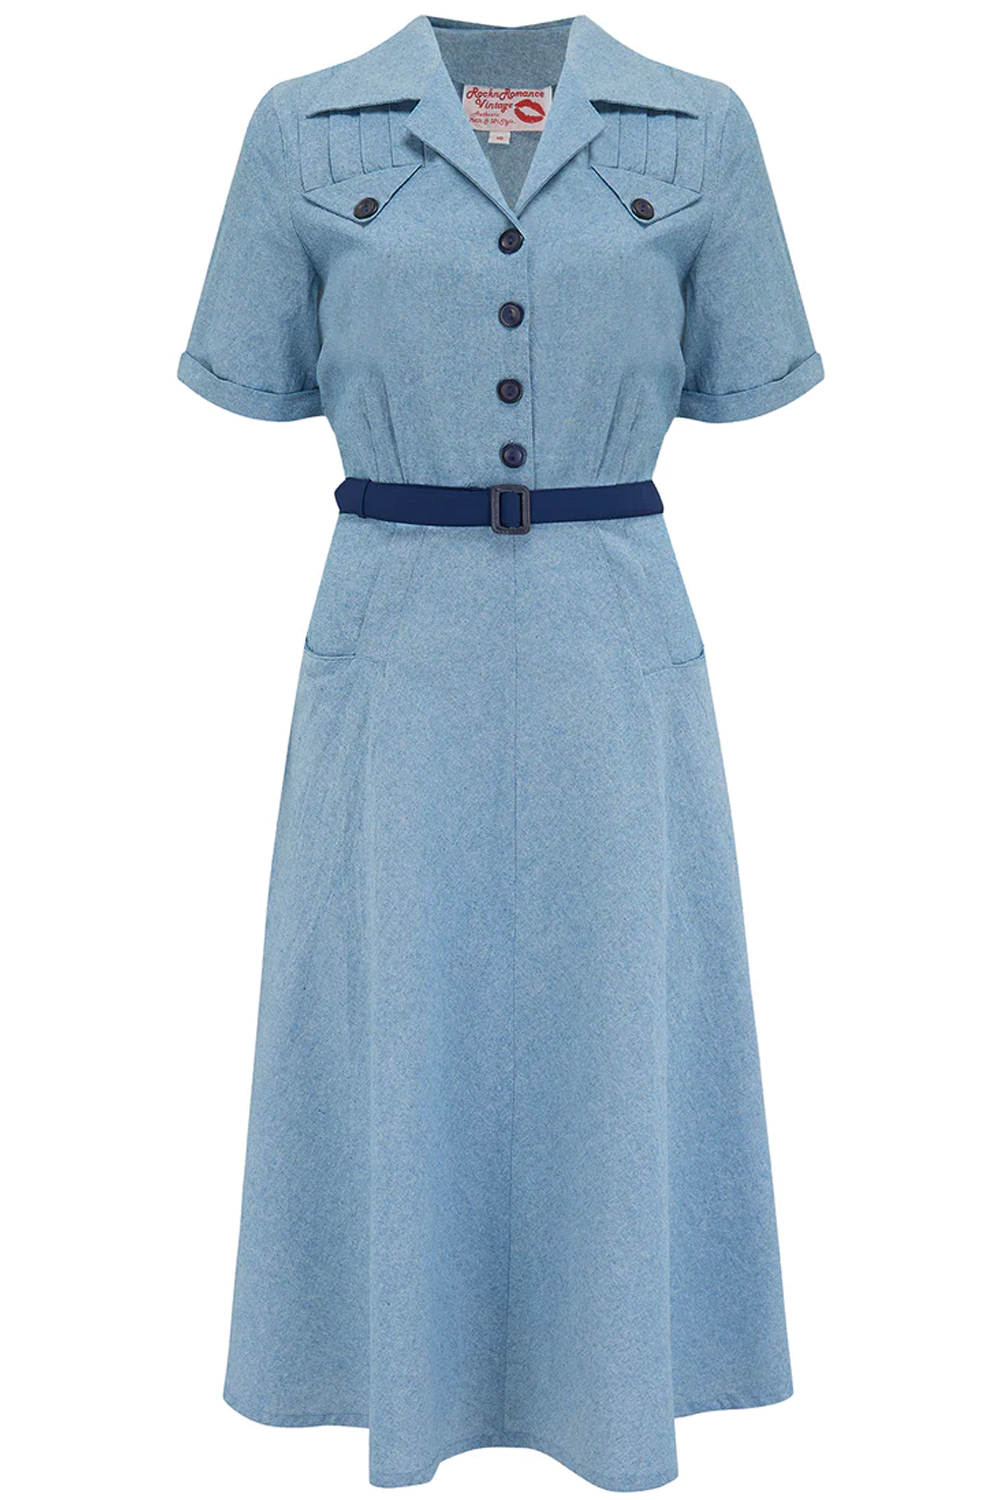 40er Jahre retro Hemdblusenkleid Denim Vintage style Jeans Kleid